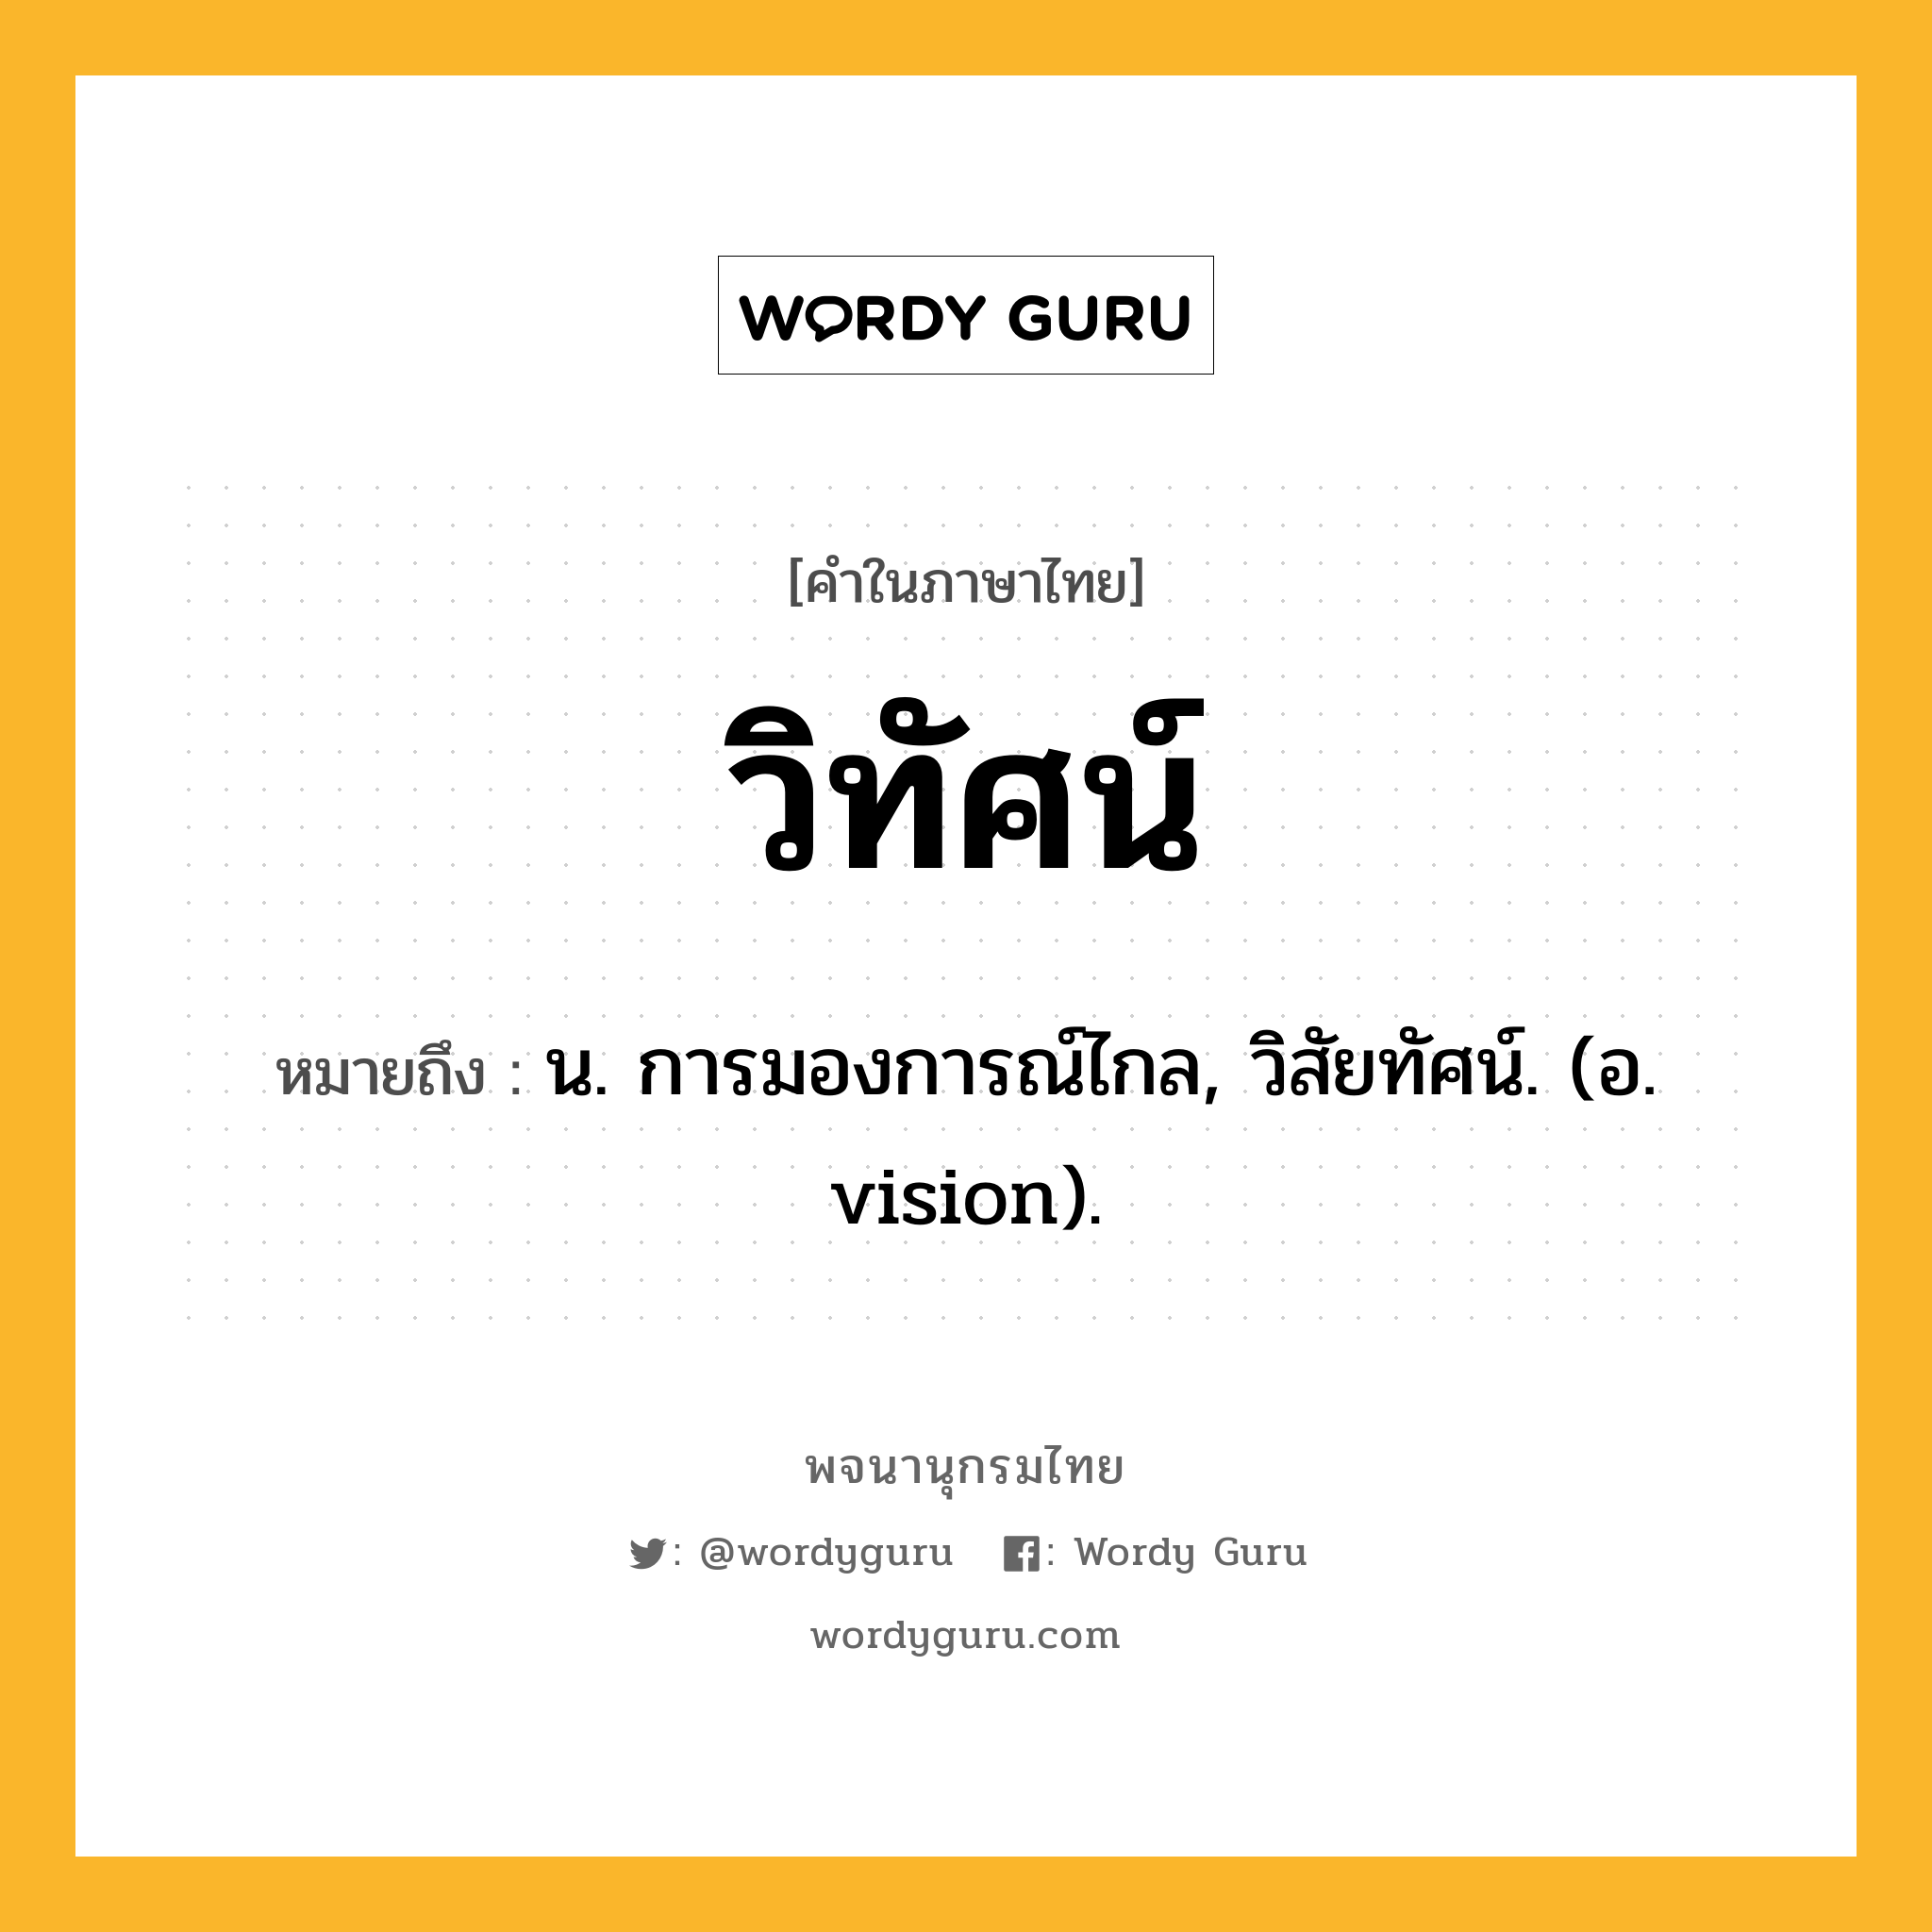 วิทัศน์ ความหมาย หมายถึงอะไร?, คำในภาษาไทย วิทัศน์ หมายถึง น. การมองการณ์ไกล, วิสัยทัศน์. (อ. vision).